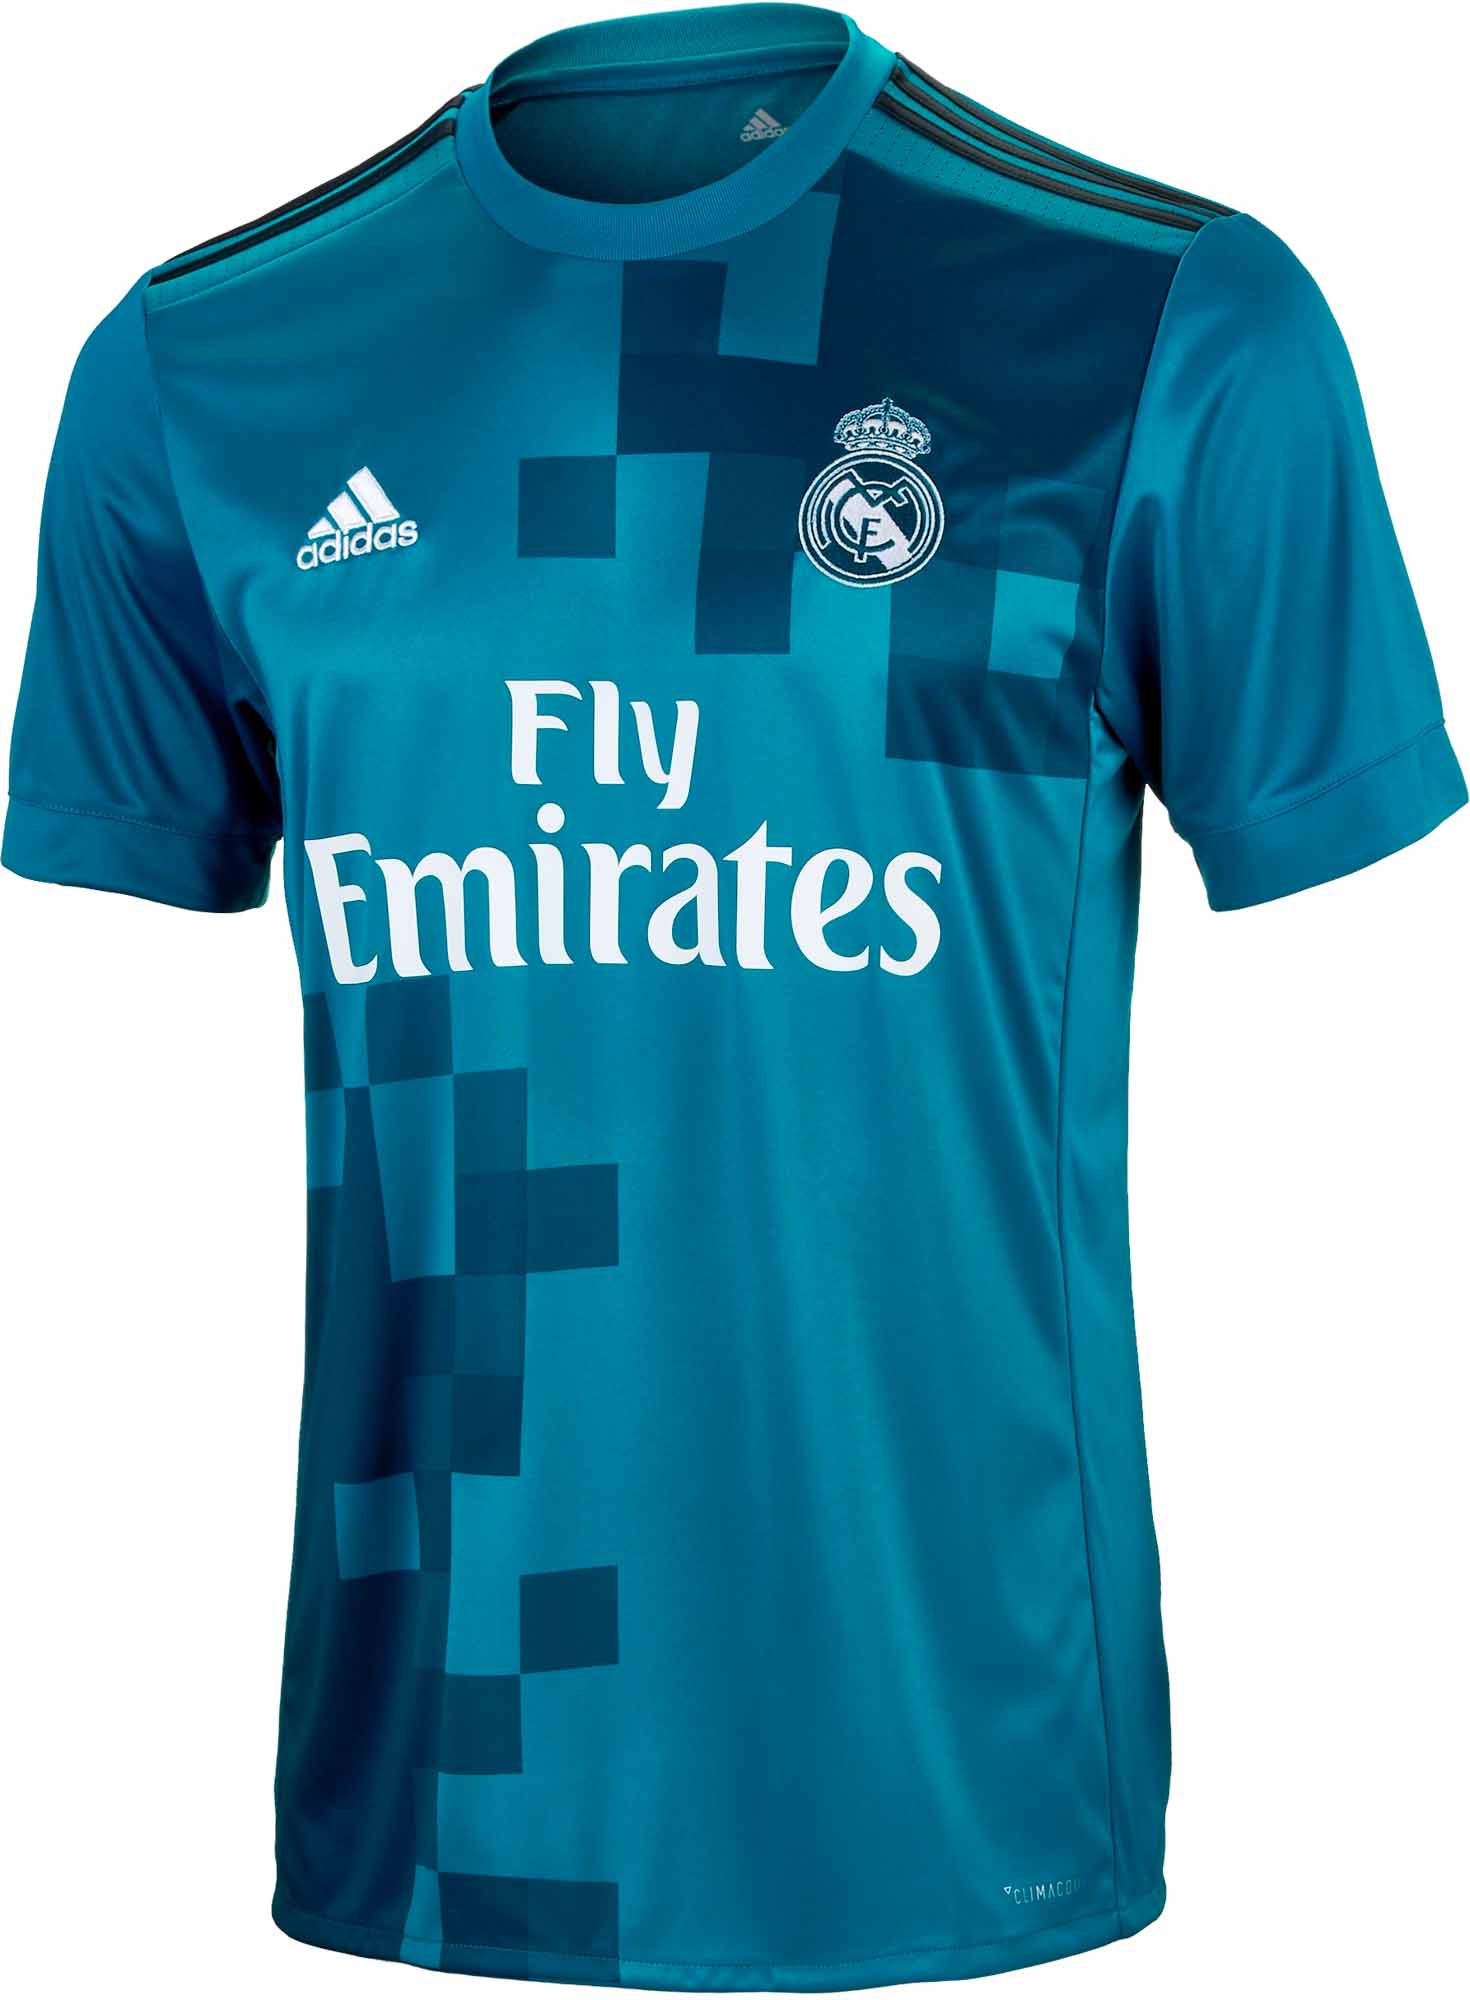 adidas Real Madrid 3rd Jersey - 2017/18 Soccer Jerseys